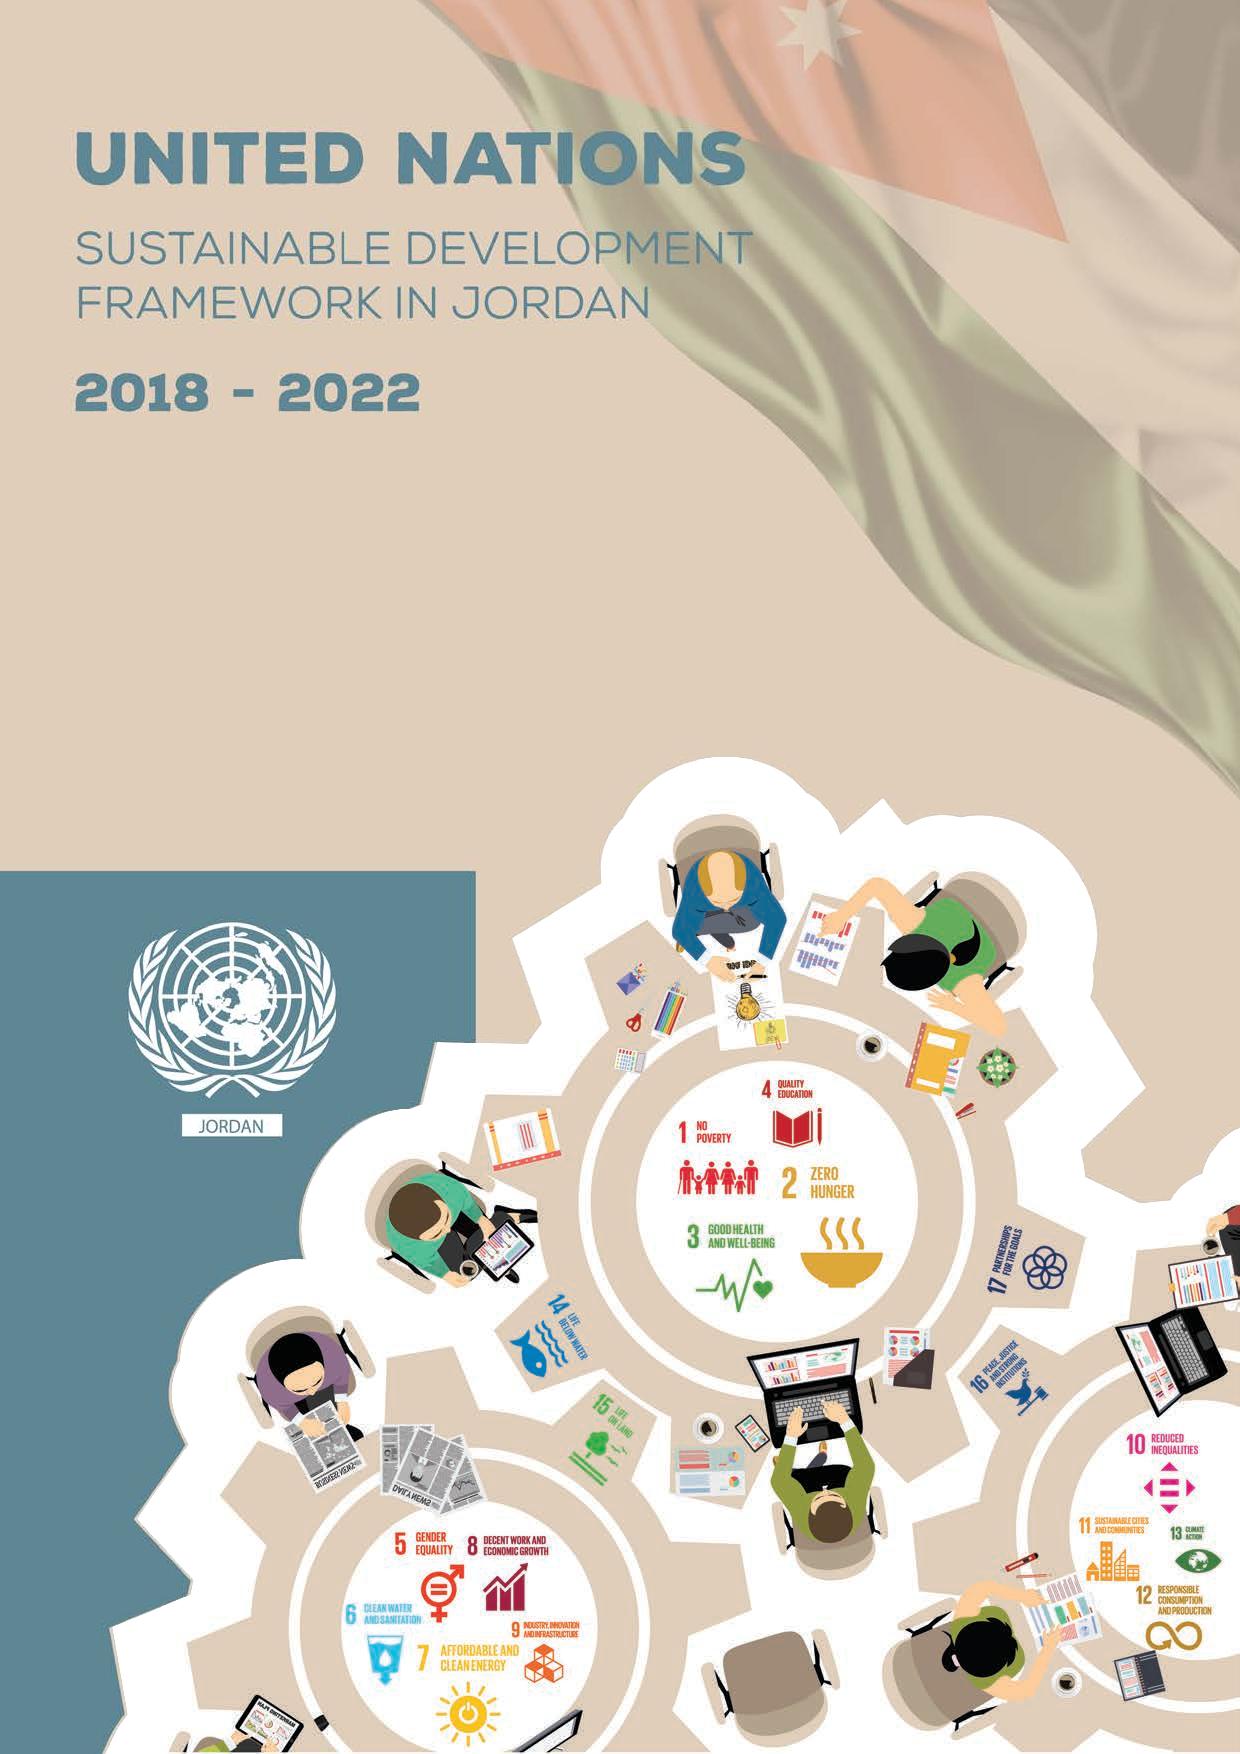 UN Sustainable Development Framework in Jordan (2018-2022)